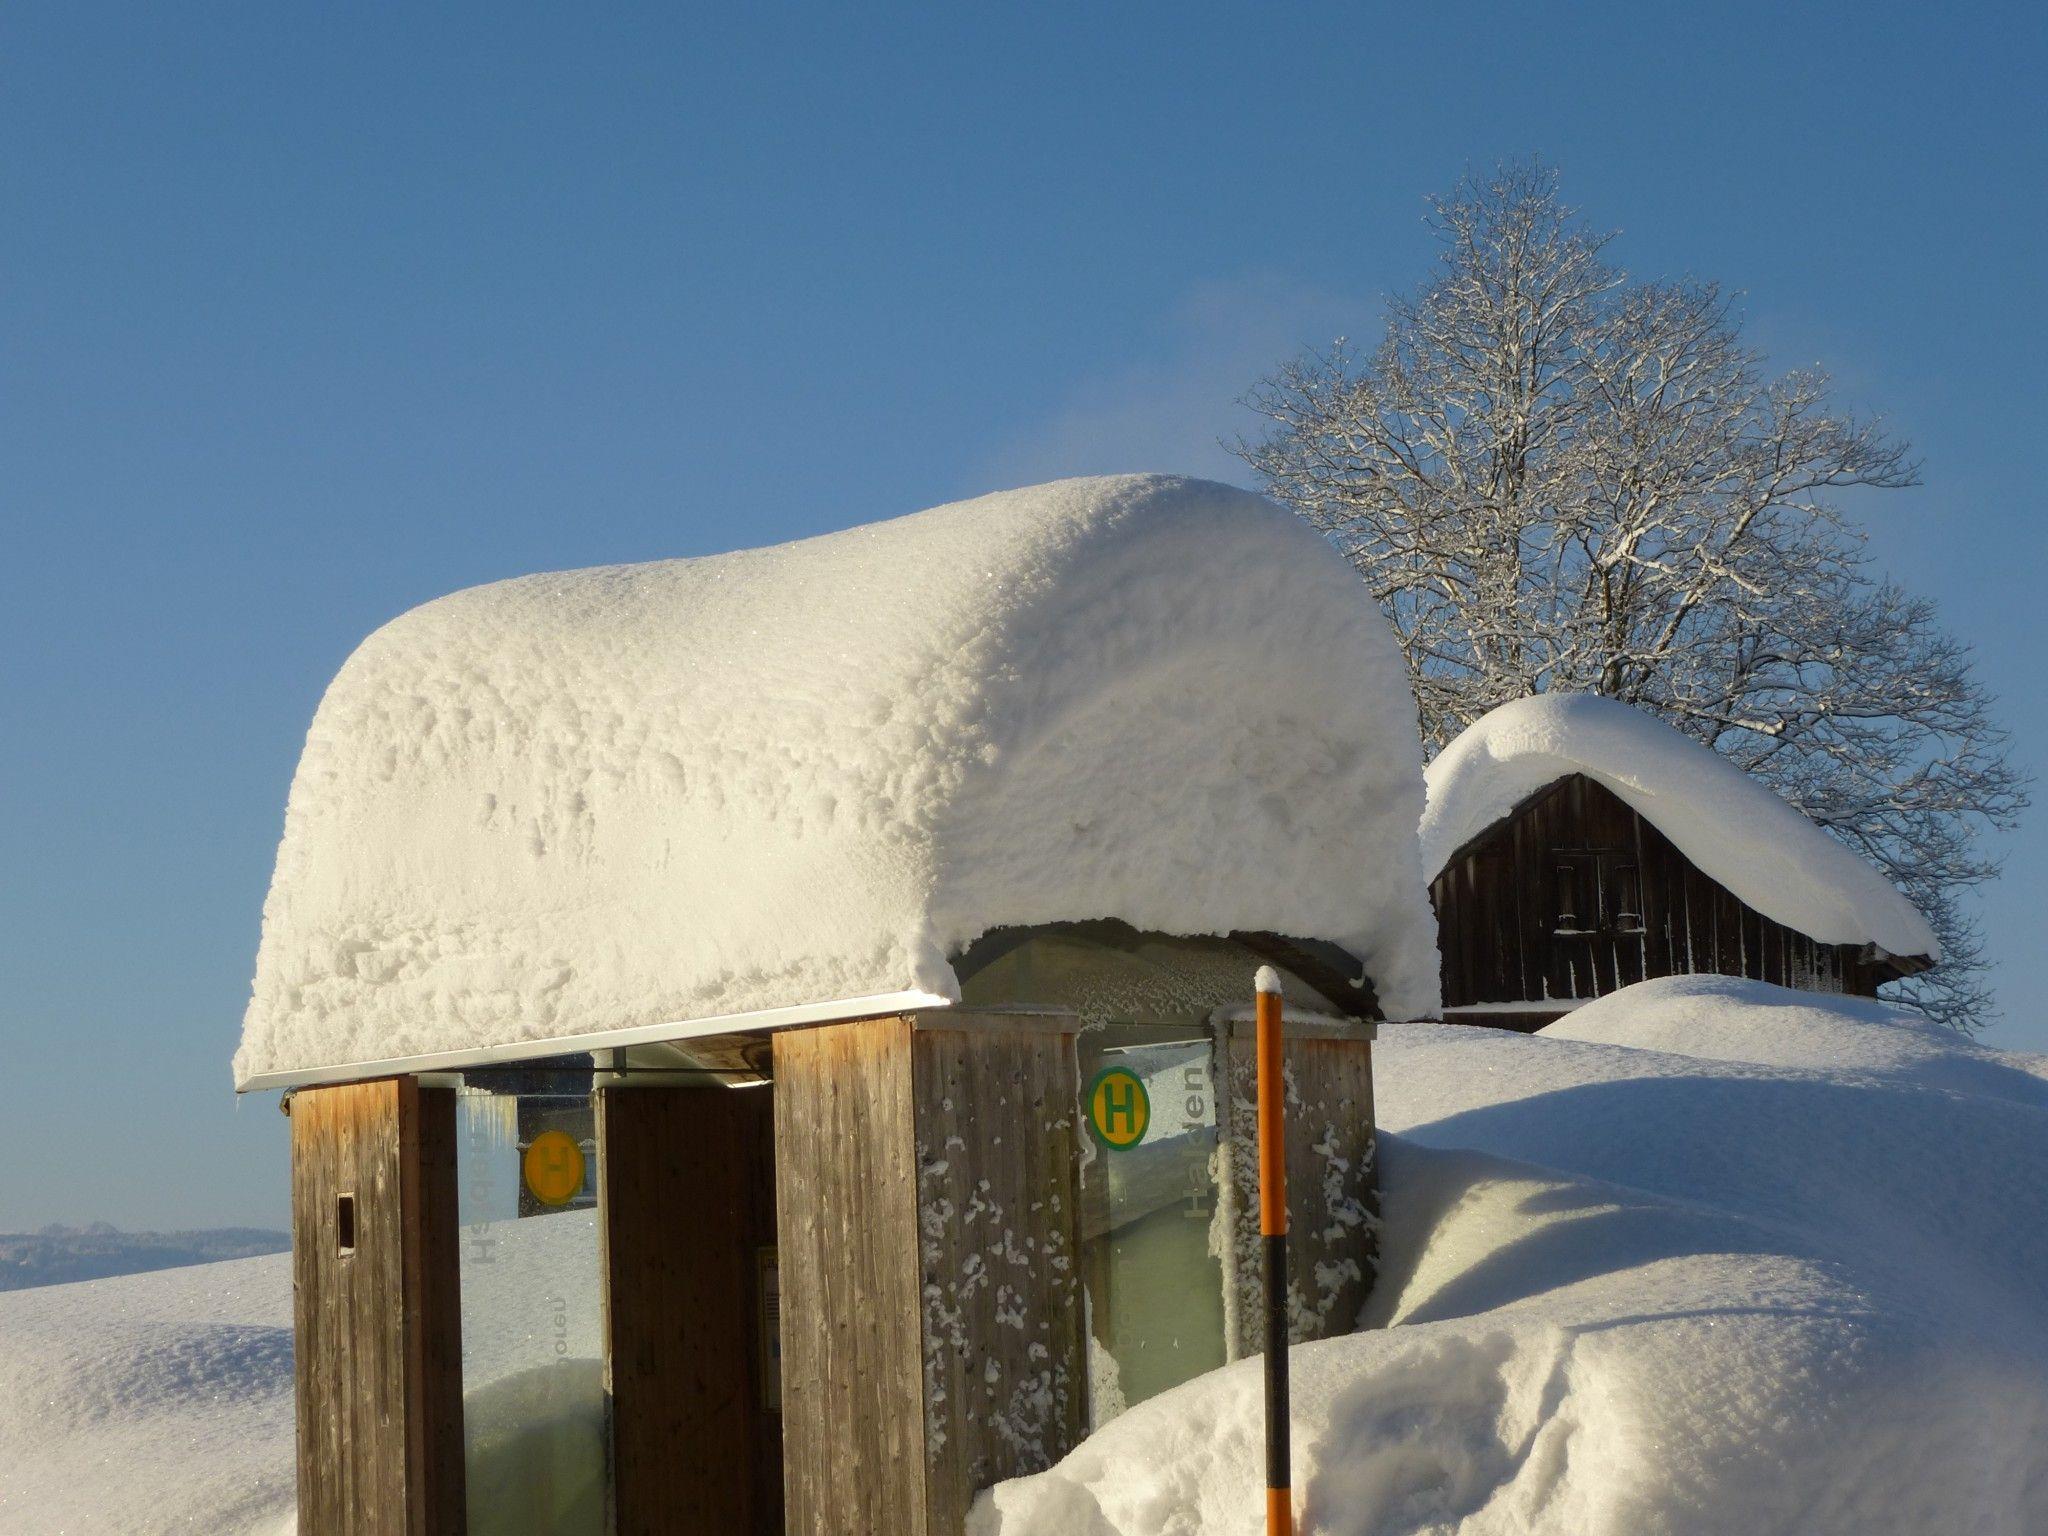 Winter-Wonderland in Doren